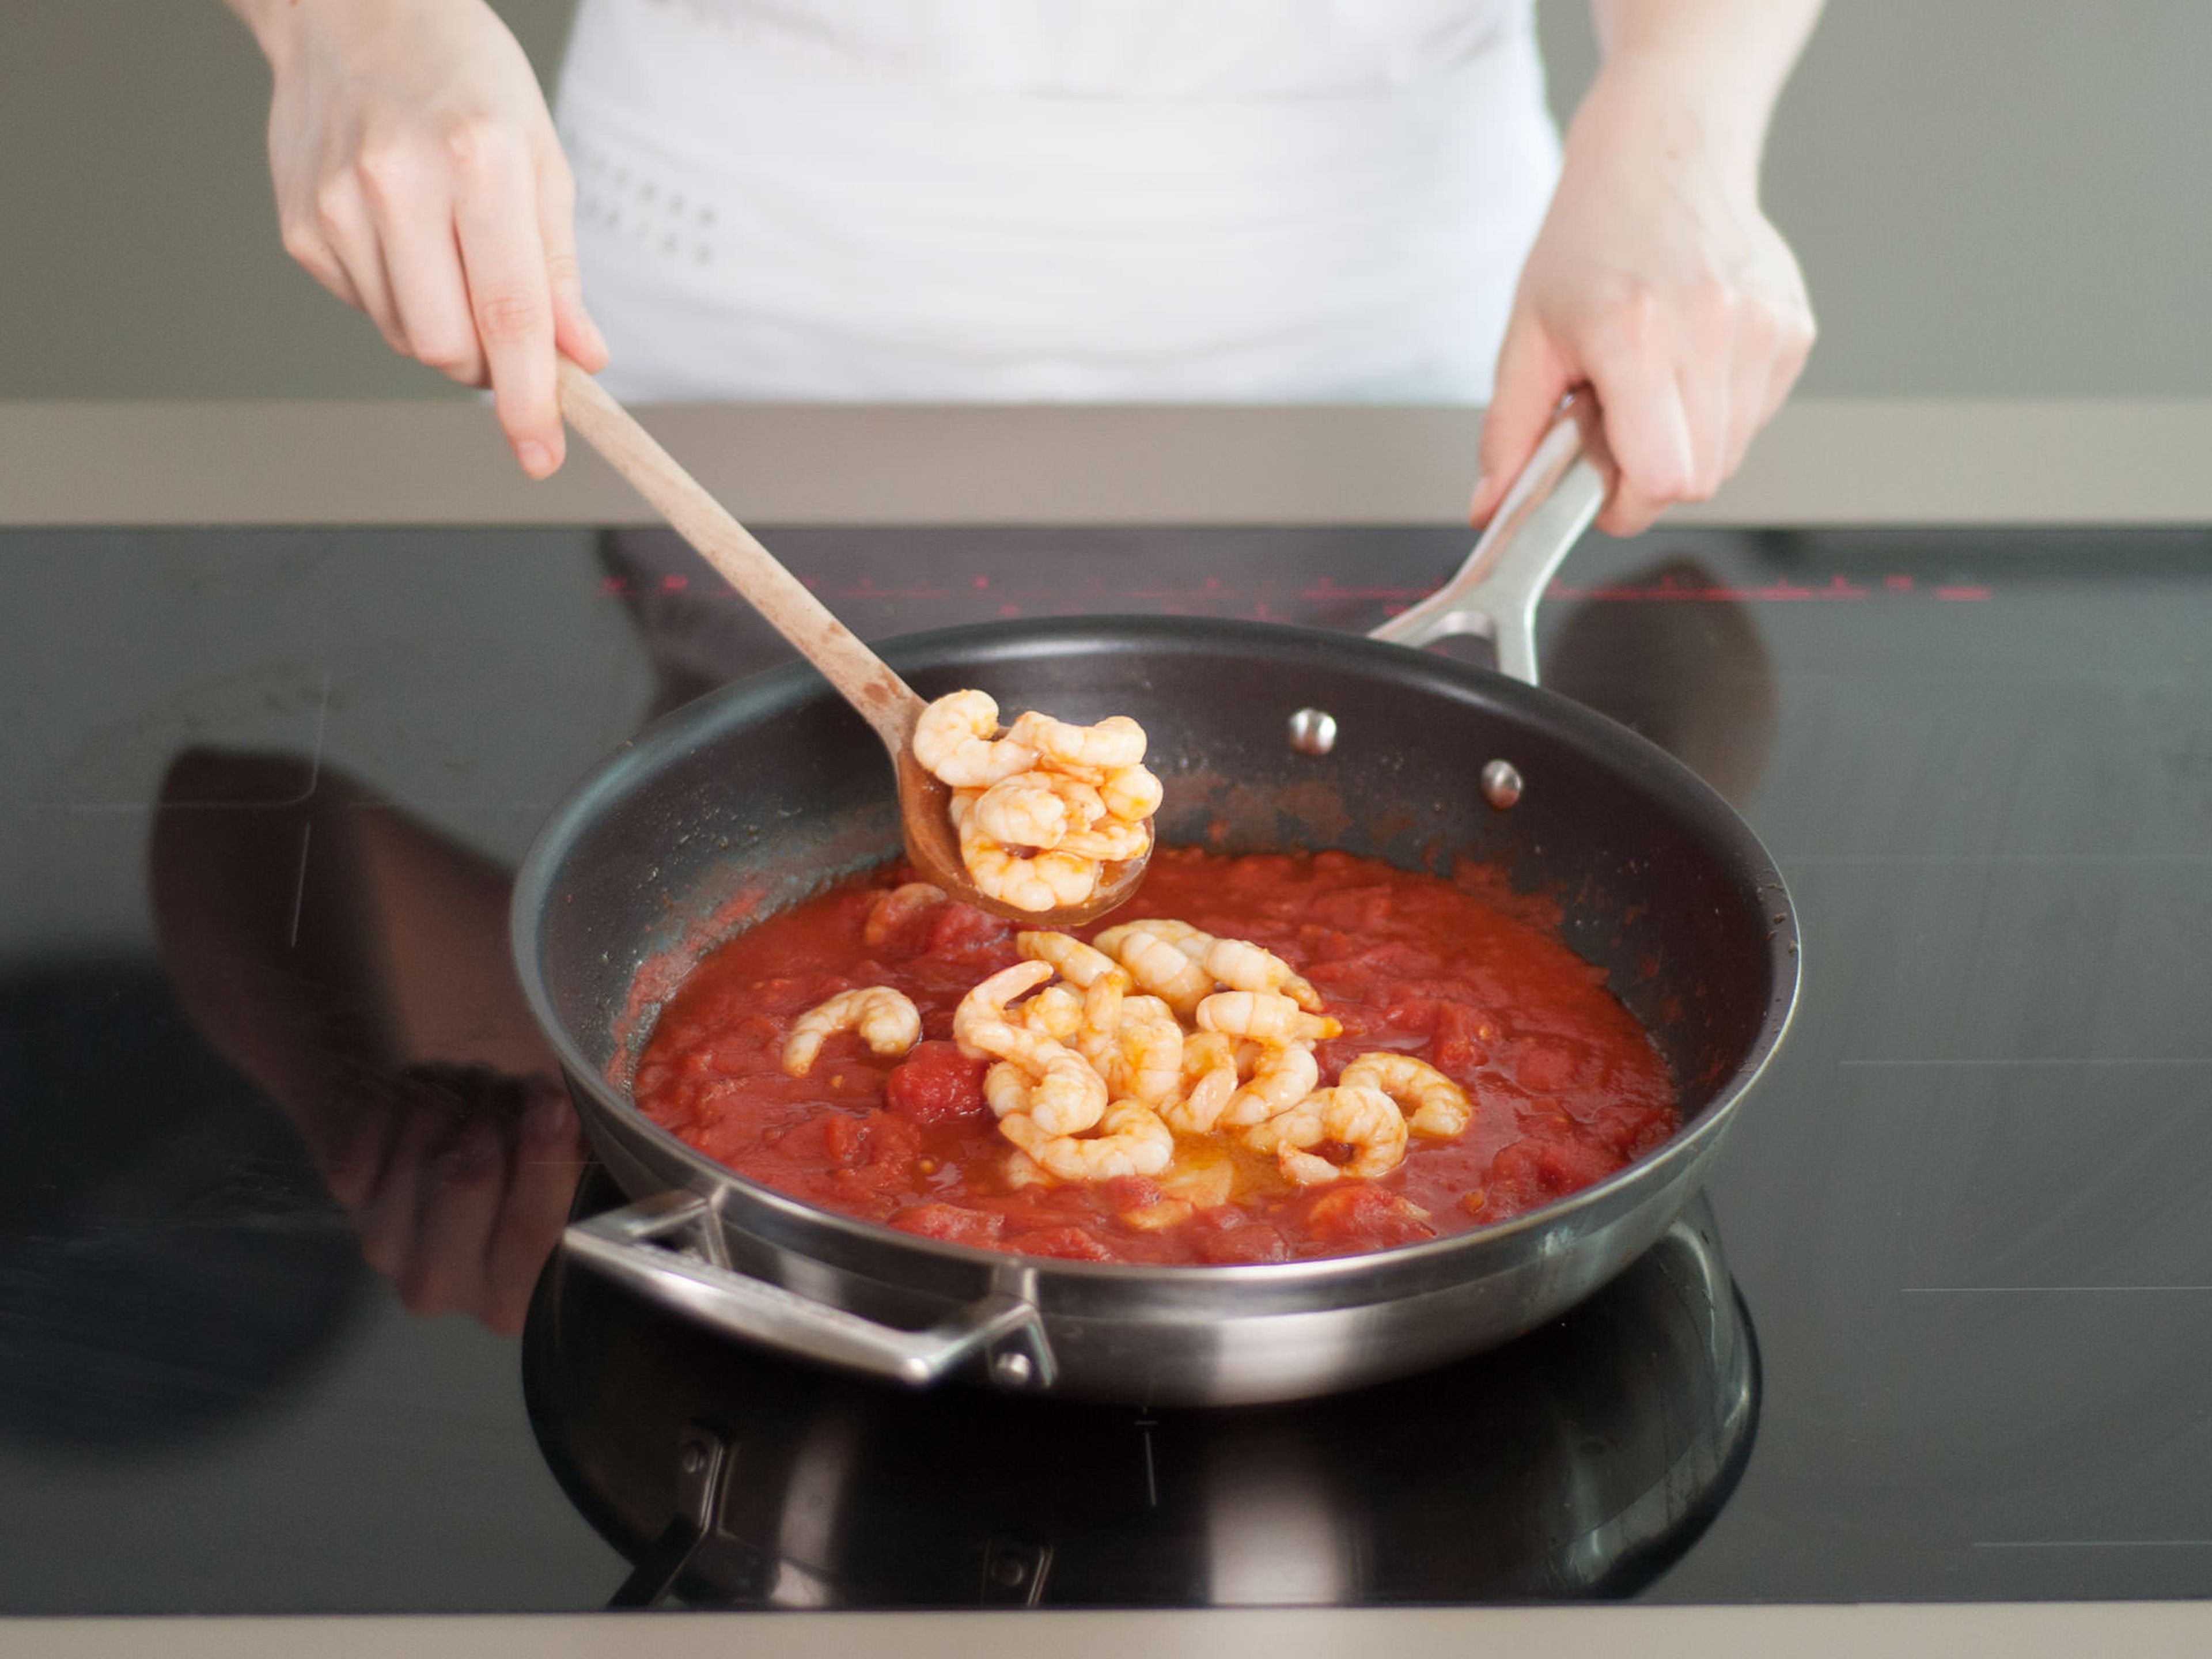 Garnelen zusammen mit ihrem Saft in eine Schüssel geben, dannn stückige Tomaten mit Knoblauch und etwas Salz in die Pfanne geben. Bei mittlerer Hitze aufkochen. Dann Hitze verringern, Garnelen dazugeben und abdecken, während die Polenta zubereitet wird.